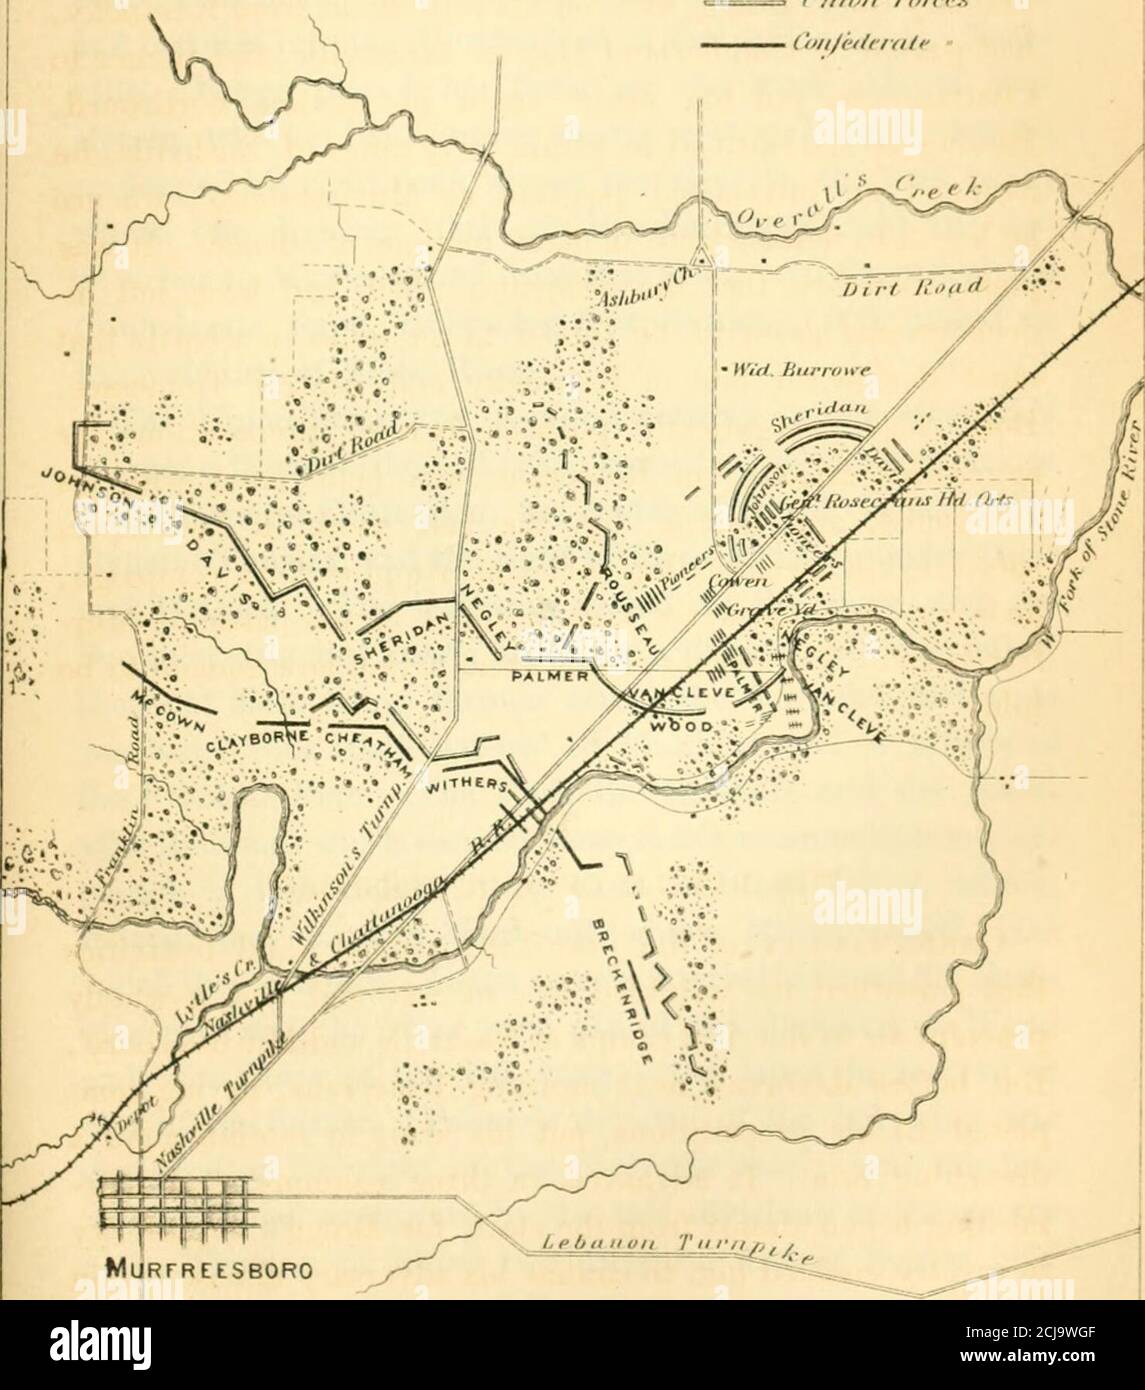 Le dodici battaglie decisive della guerra; una storia delle campagne  orientali e occidentali, in relazione alle azioni che hanno deciso la loro  emissione. Y e Tennessee centrale. Entrambe le parti hanno